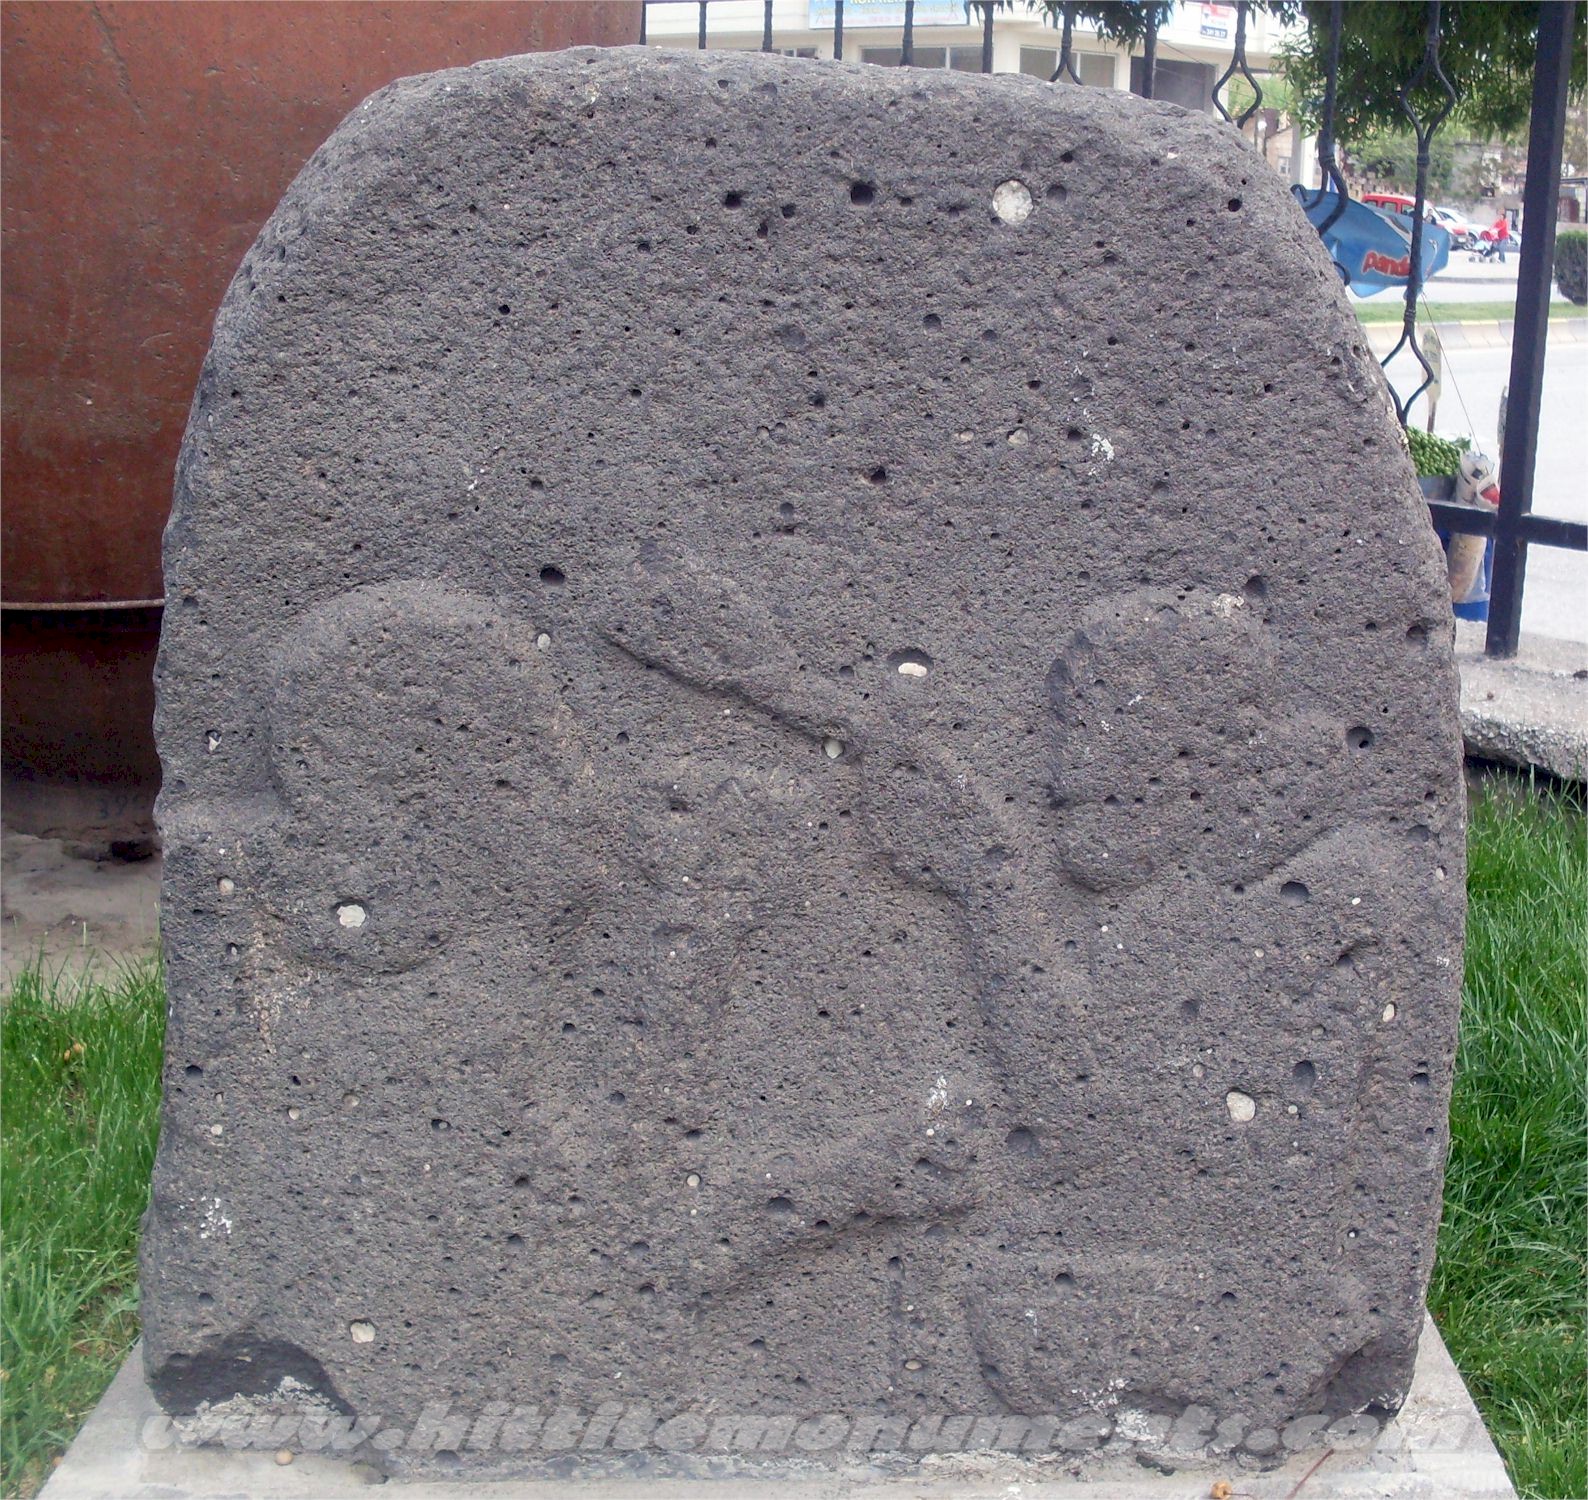 Photo of the Çapalı stele taken by B. Bilgin in 2009